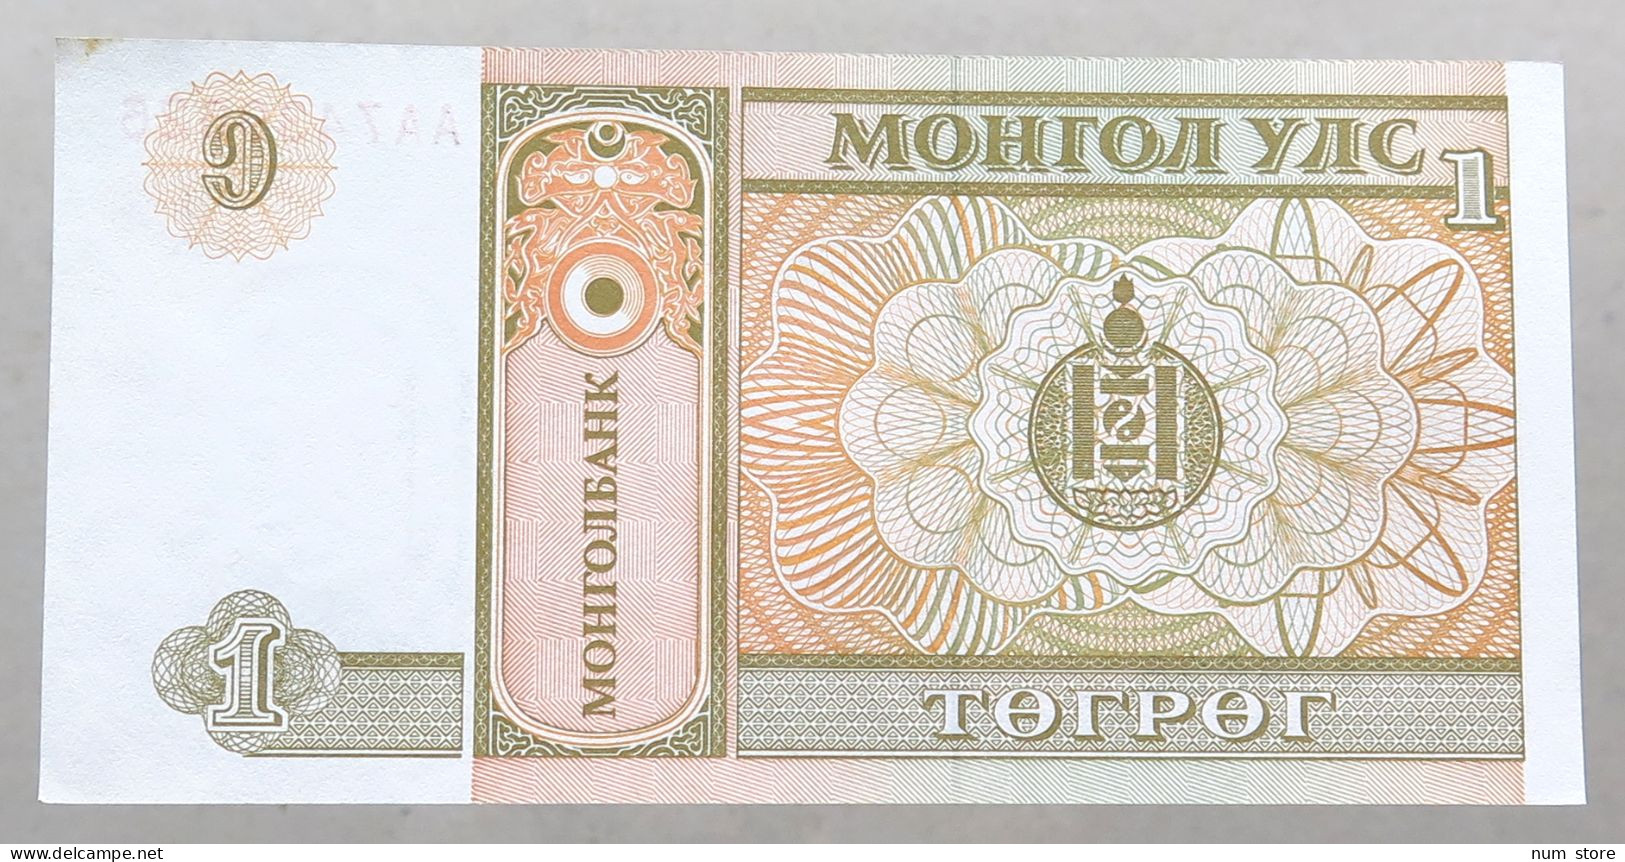 MONGOLIA 1 TUGRIK 1993-2008 TOP #alb051 1017 - Mongolia